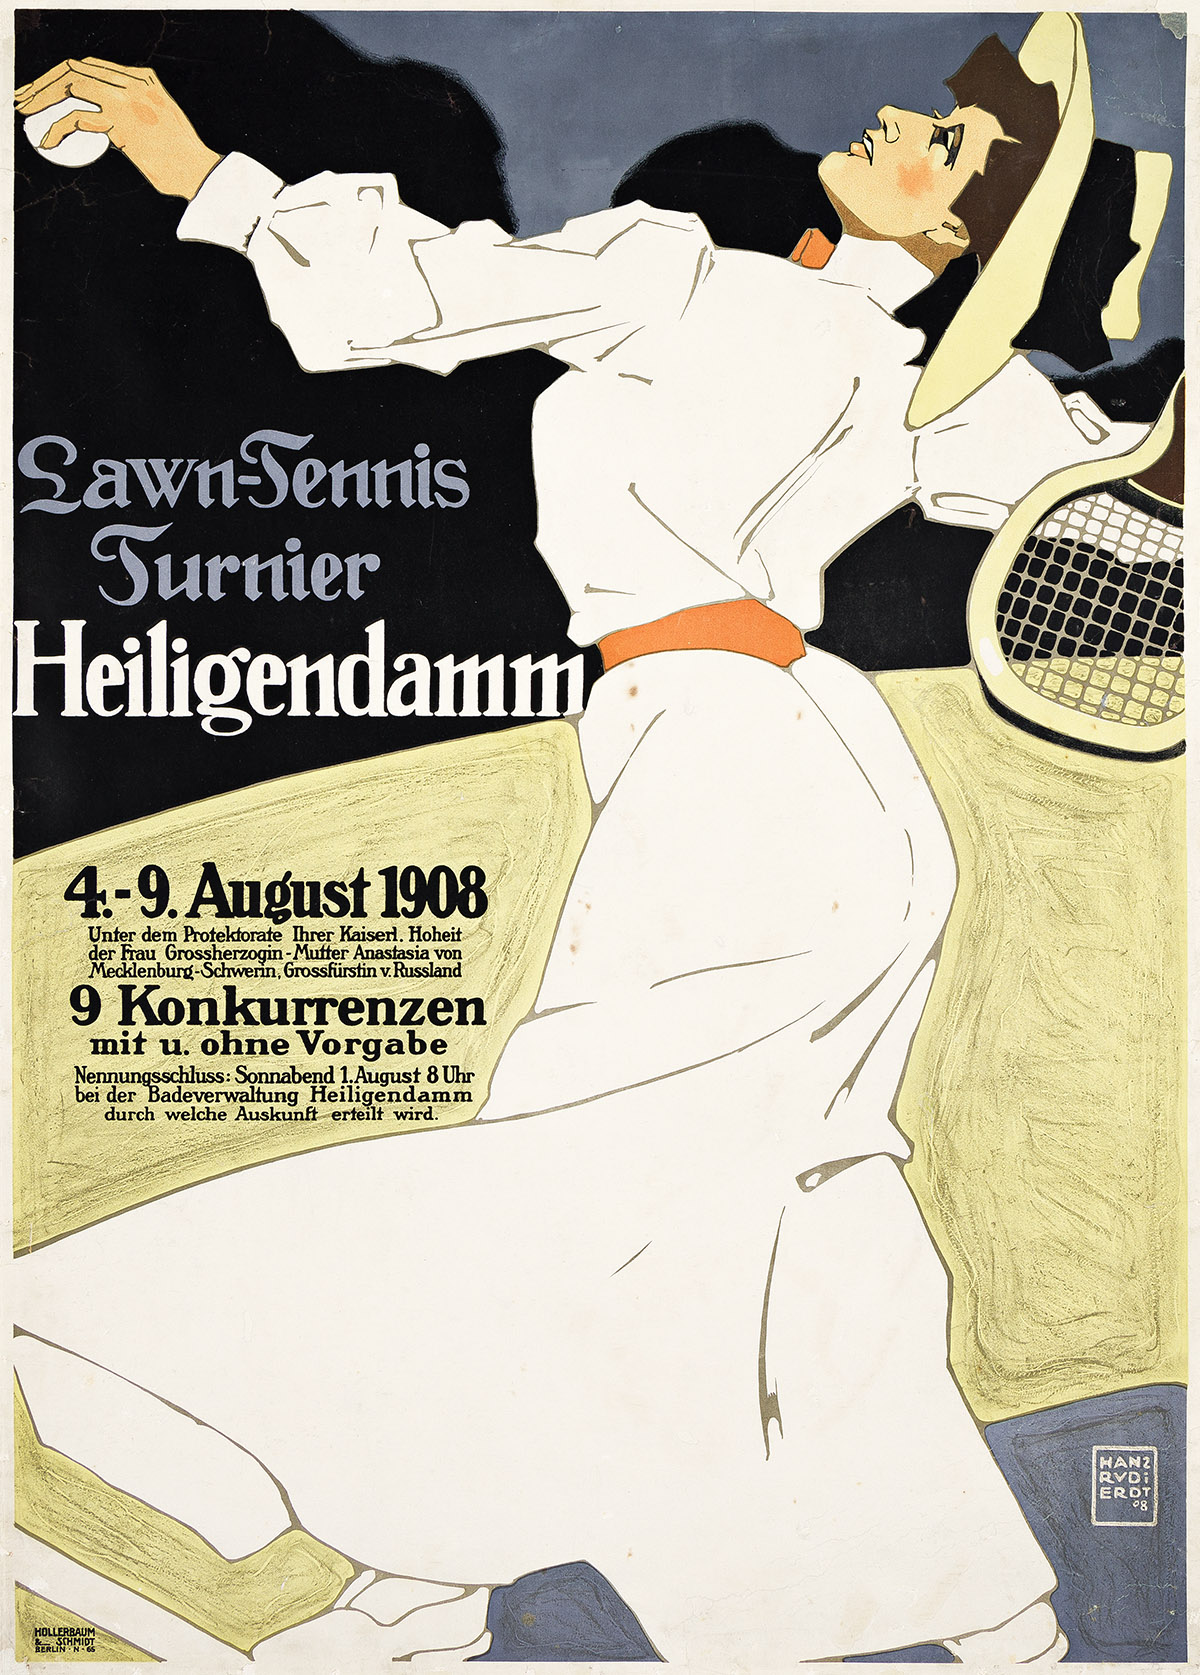 HANS RUDI ERDT (1883-1918). LAWN - TENNIS TURNIER / HEILIGENDAMM. 1908. 38¼x27¼ inches, 97x69¼ cm. Hollerbaum & Schmidt, Berlin.